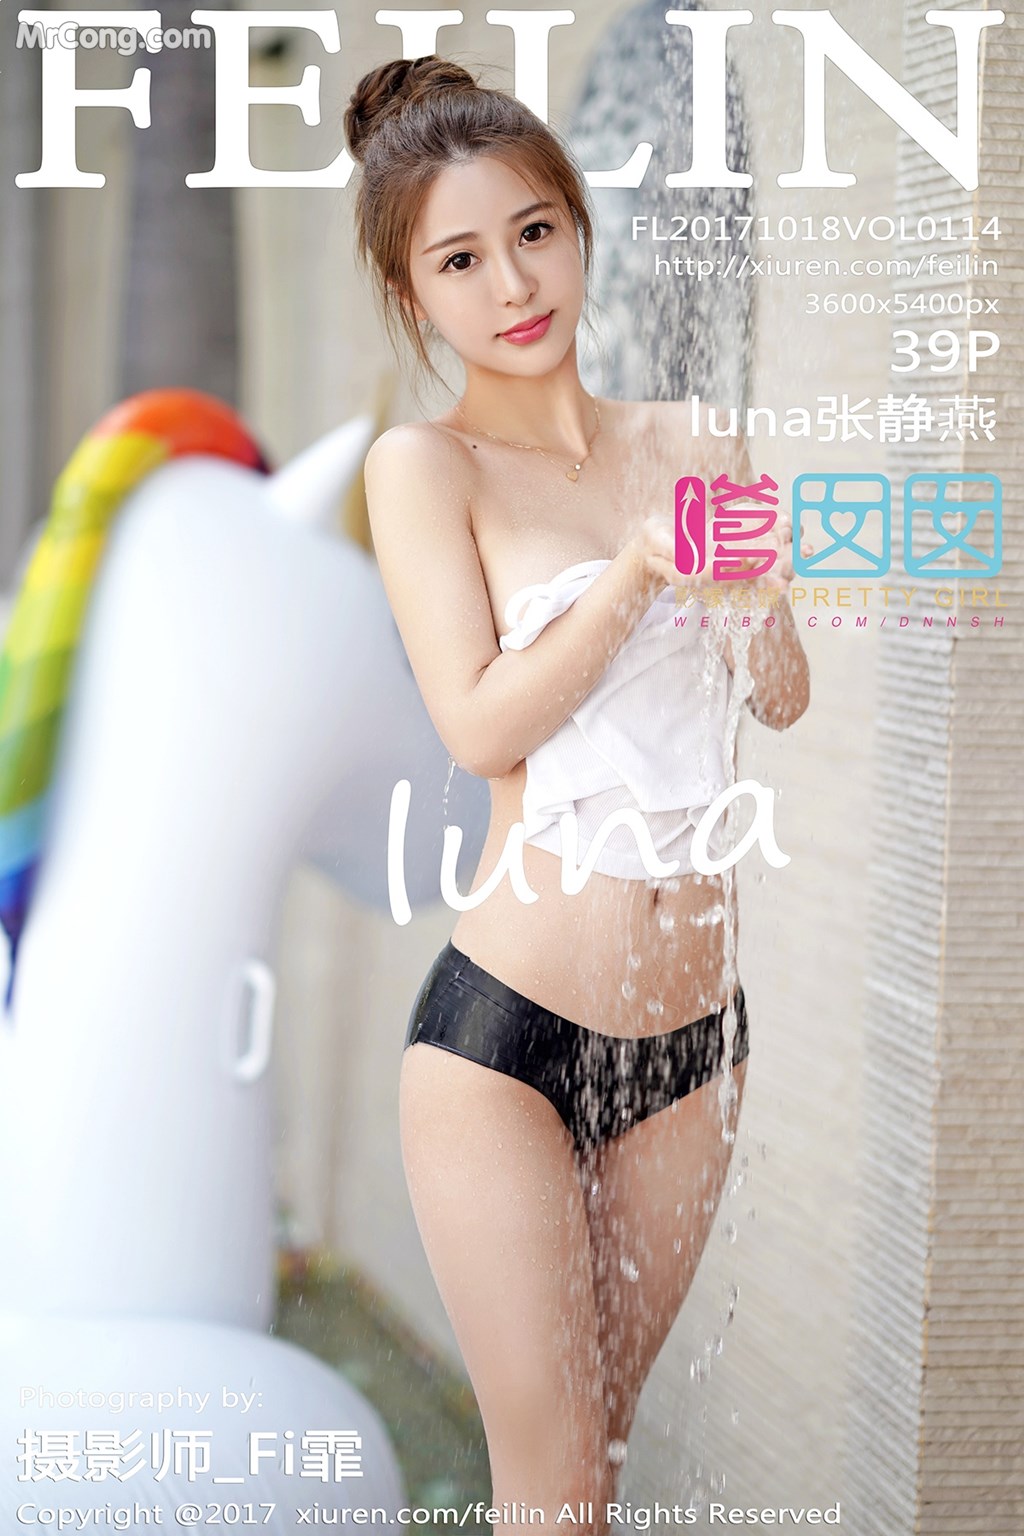 FEILIN Vol.114: Model Zhang Jing Yan (luna 张静燕) (40 photos)